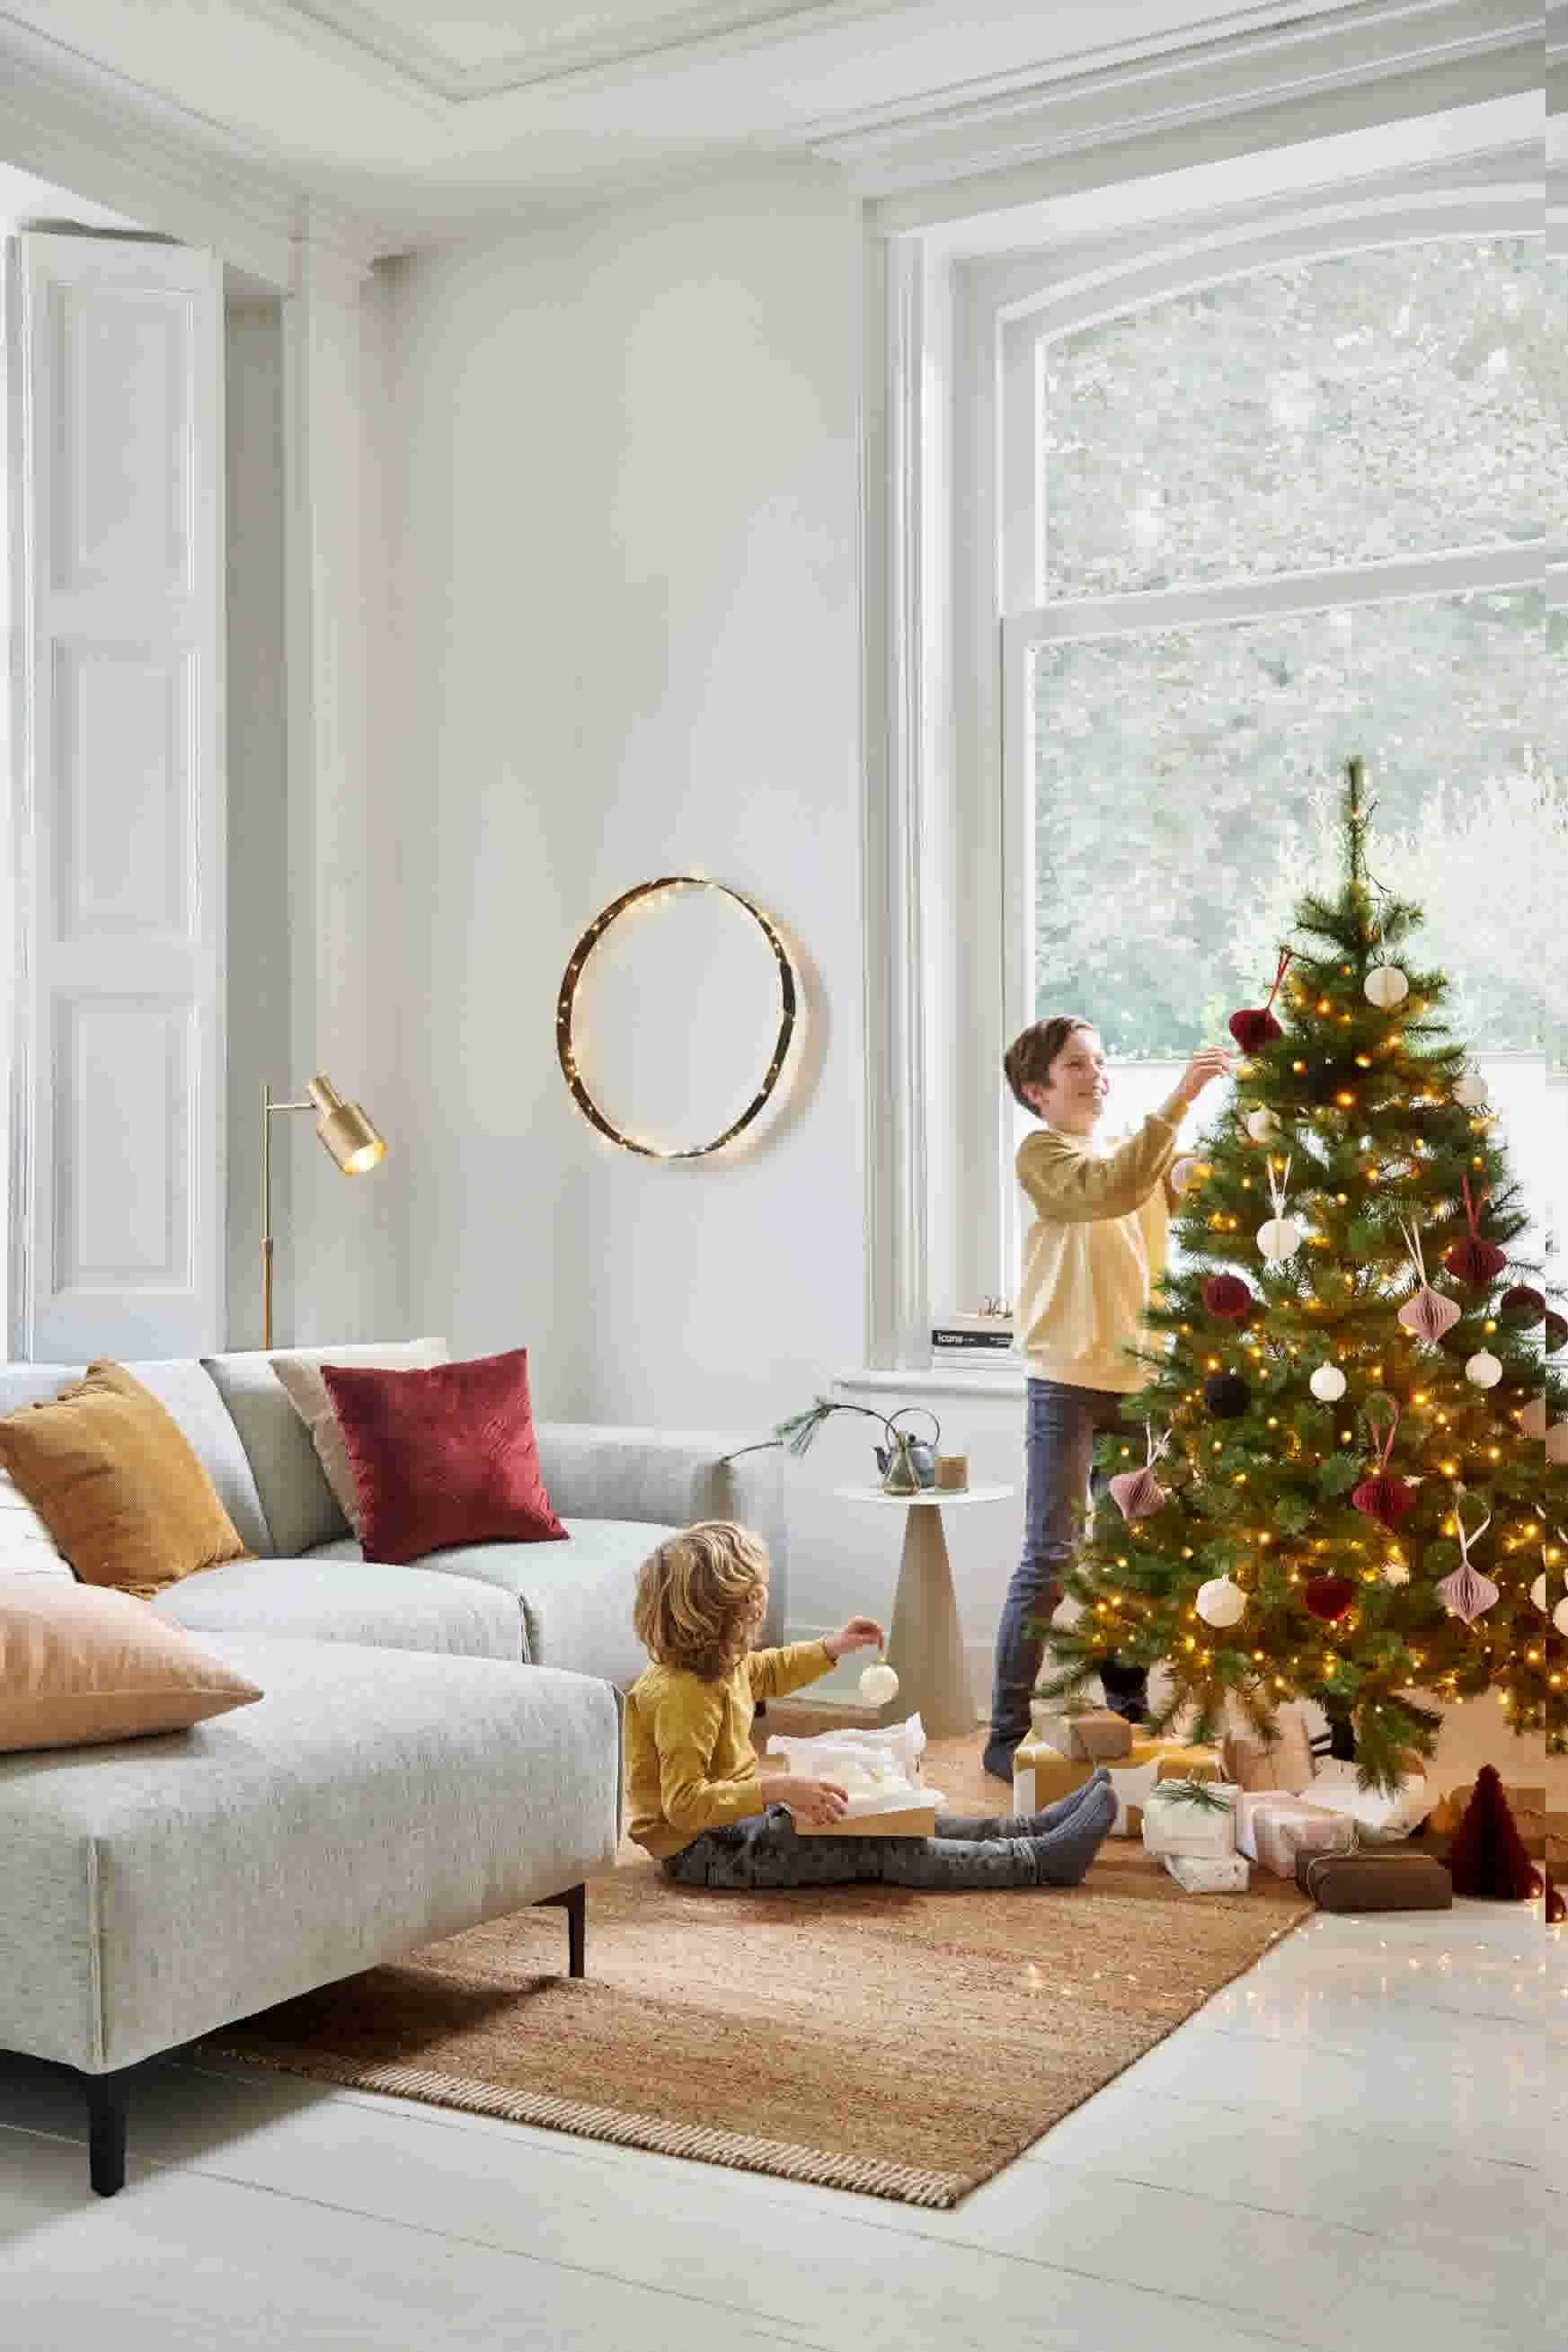 Kameraad afwijzing Indrukwekkend Kerstversiering in huis: stylingtips met kerstdecoratie | Karwei